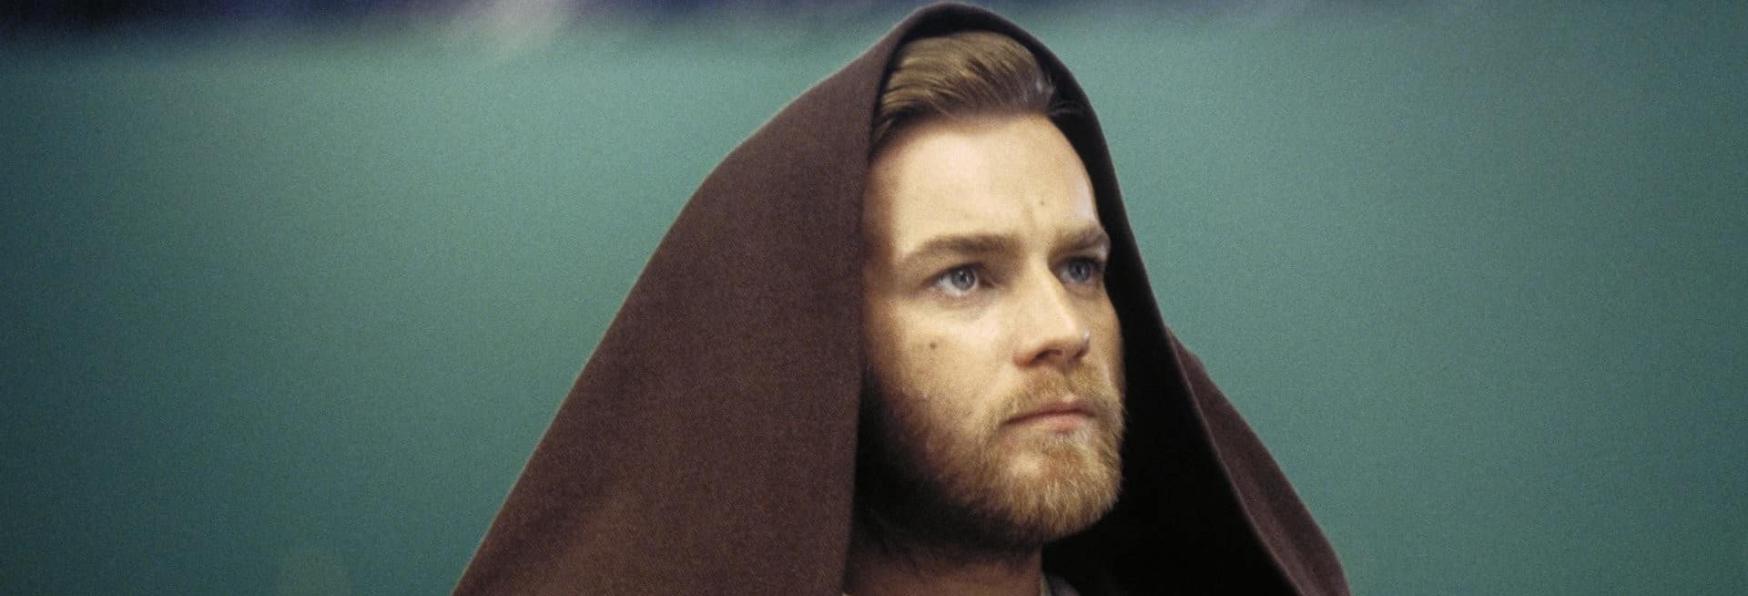 Obi-Wan Kenobi: Rivelato il Cast e la Data di inizio Produzione della nuova Serie TV